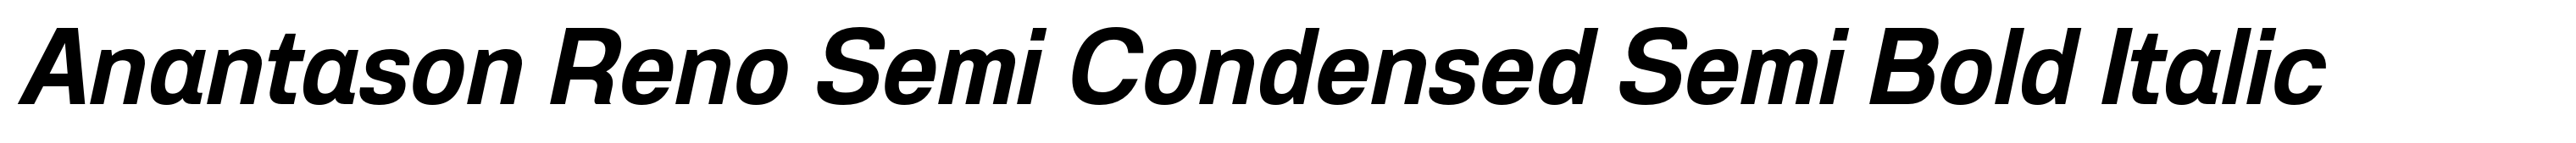 Anantason Reno Semi Condensed Semi Bold Italic